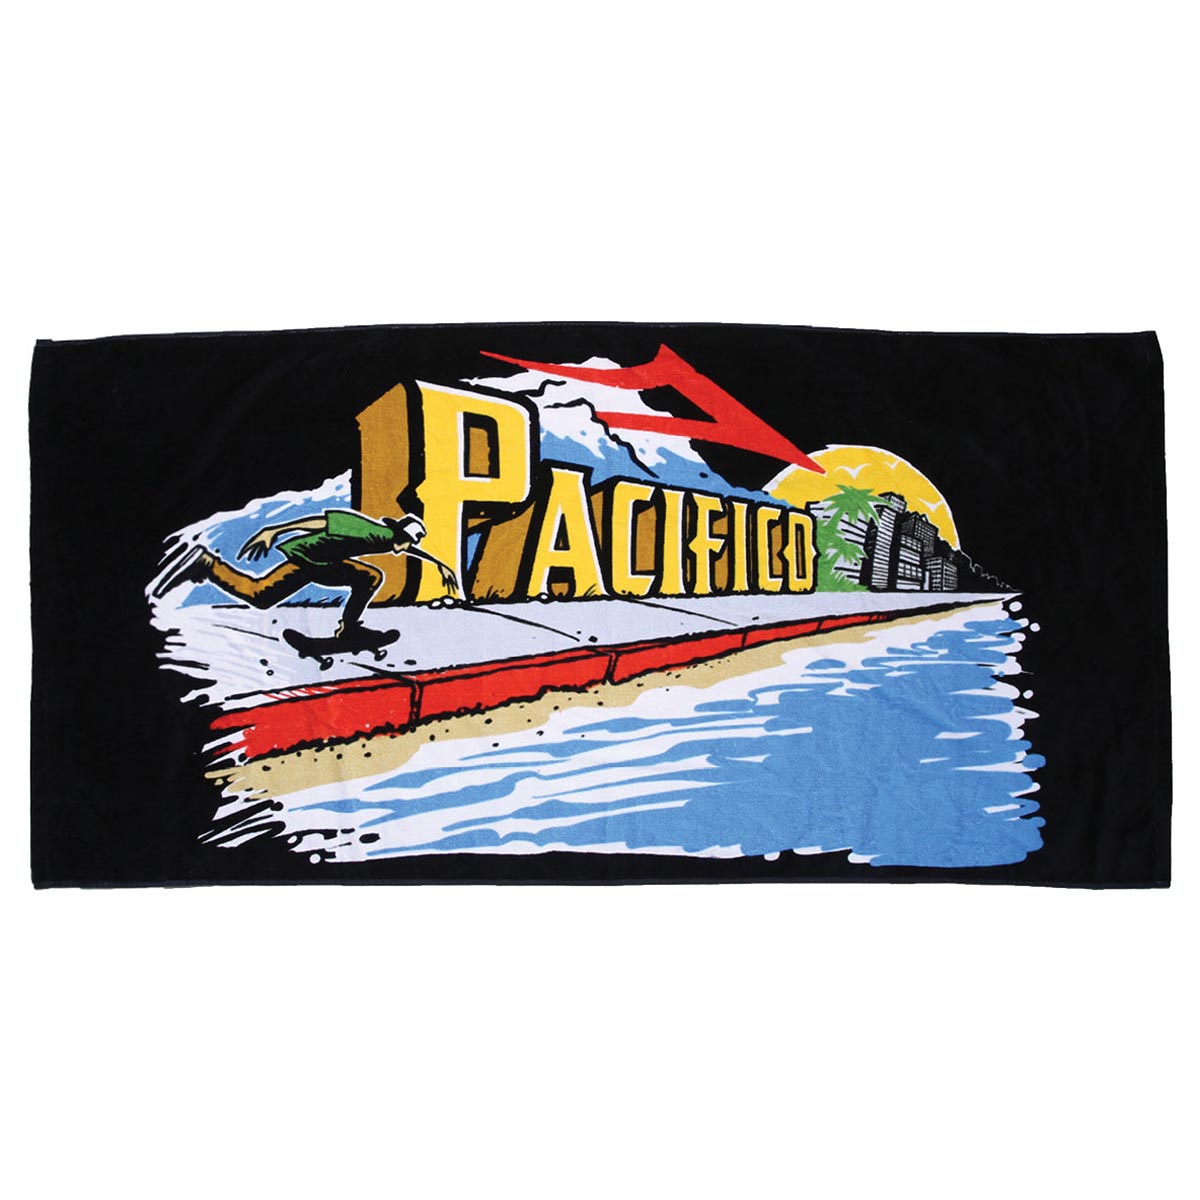 Lakai x Pacifico Push Beach Towel - Black image 1